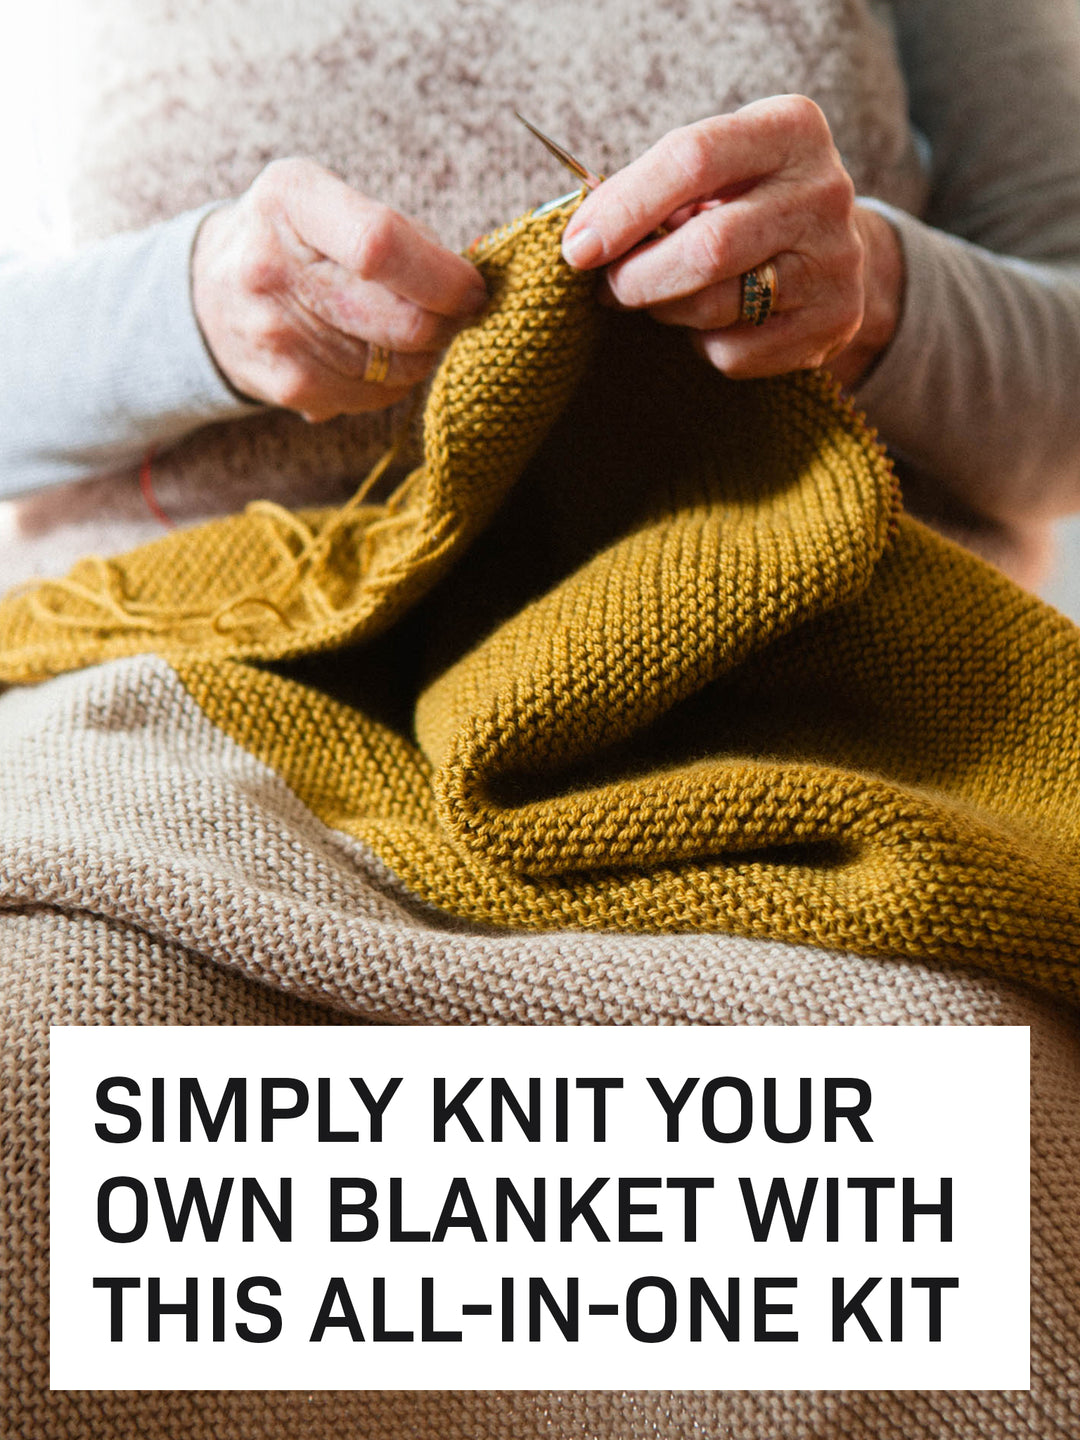 Essential Blanket